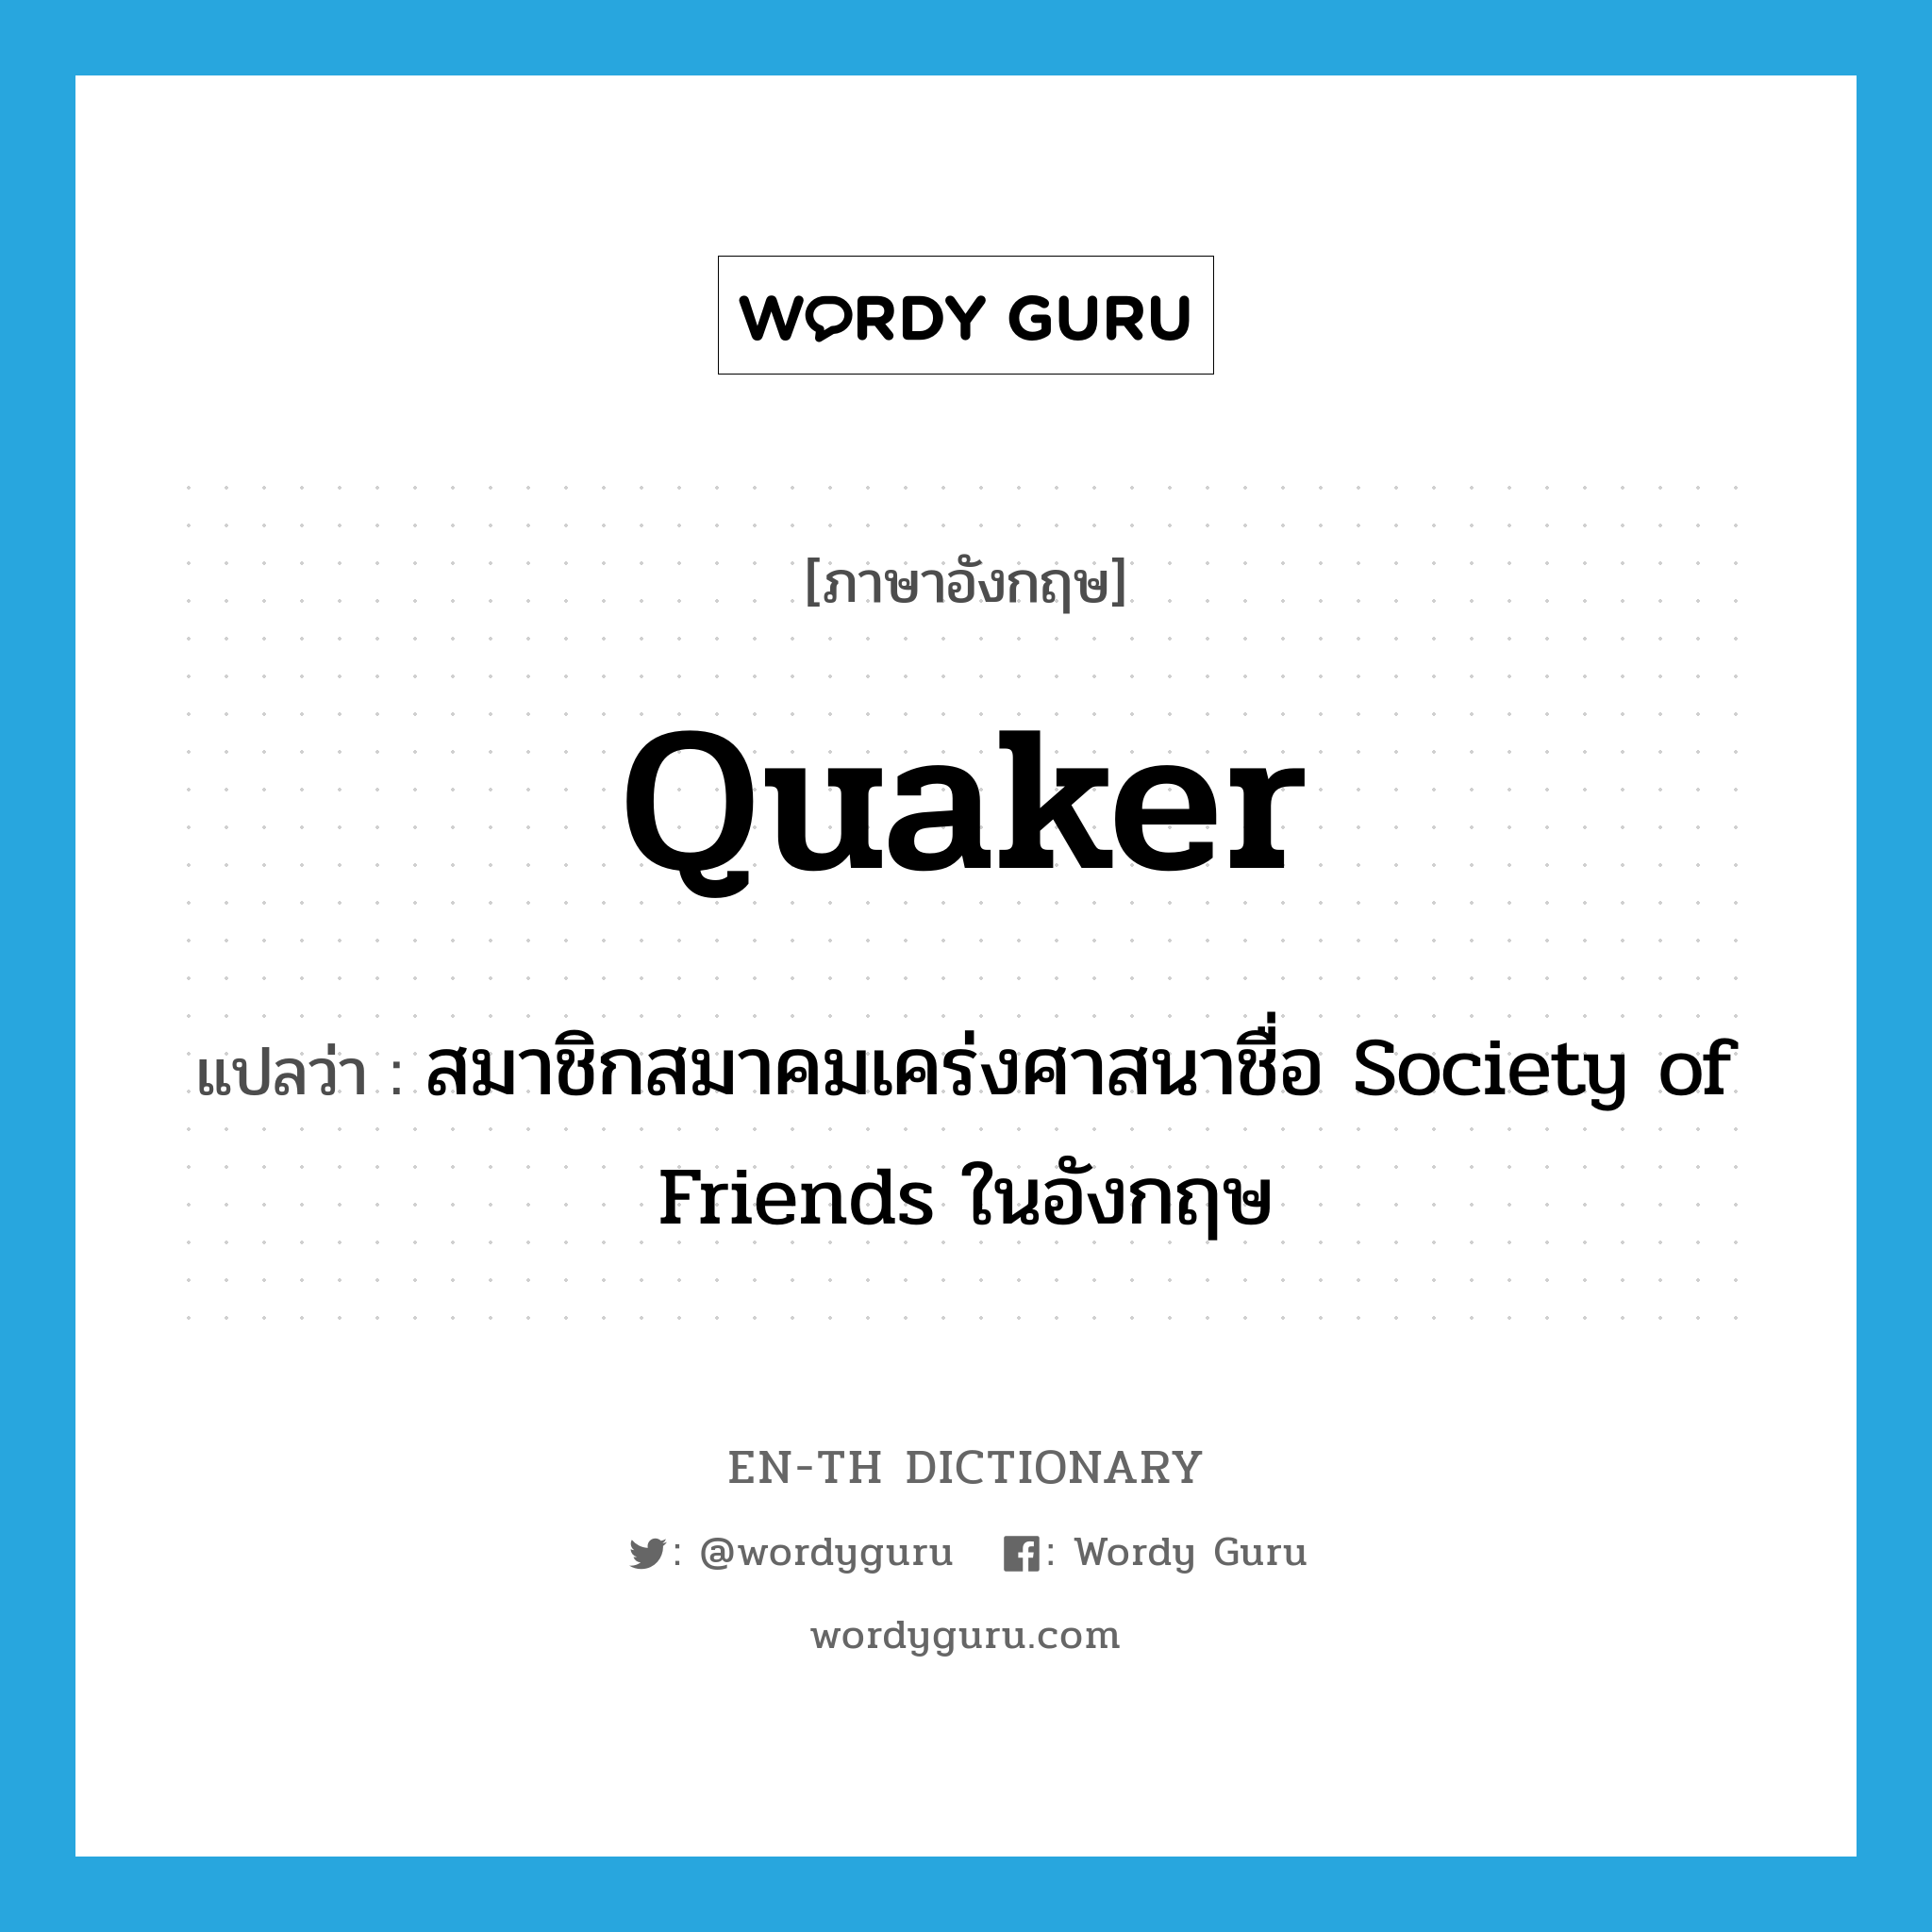 Quaker แปลว่า?, คำศัพท์ภาษาอังกฤษ Quaker แปลว่า สมาชิกสมาคมเคร่งศาสนาชื่อ Society of Friends ในอังกฤษ ประเภท N หมวด N